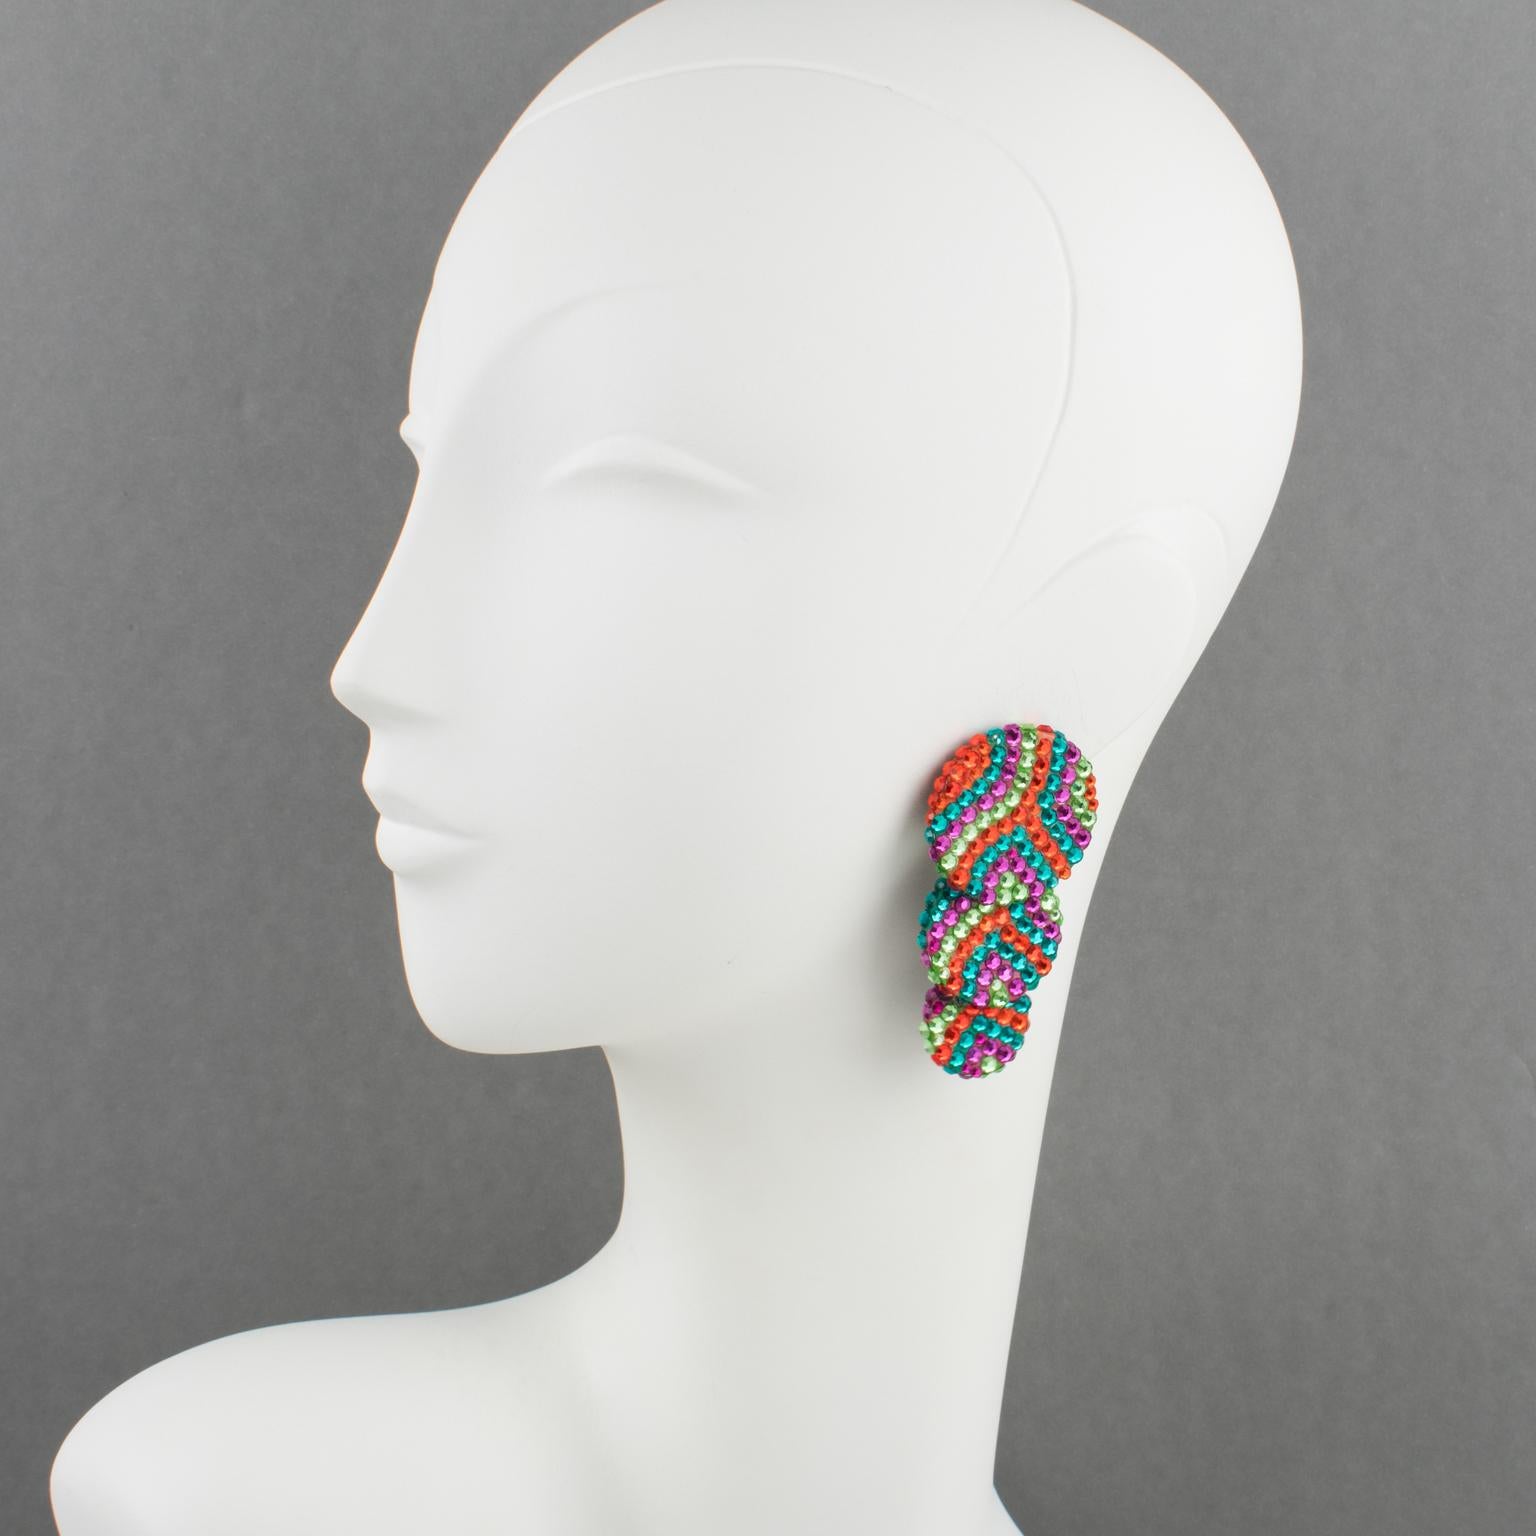 Diese hübschen Statement-Ohrringe wurden in den 1980er Jahren von Richard Kerr entworfen. Sie bestehen aus den für ihn charakteristischen Pave-Strasssteinen und weisen kaskadenartige, abgestufte Scheibenformen auf, die alle mit bunten